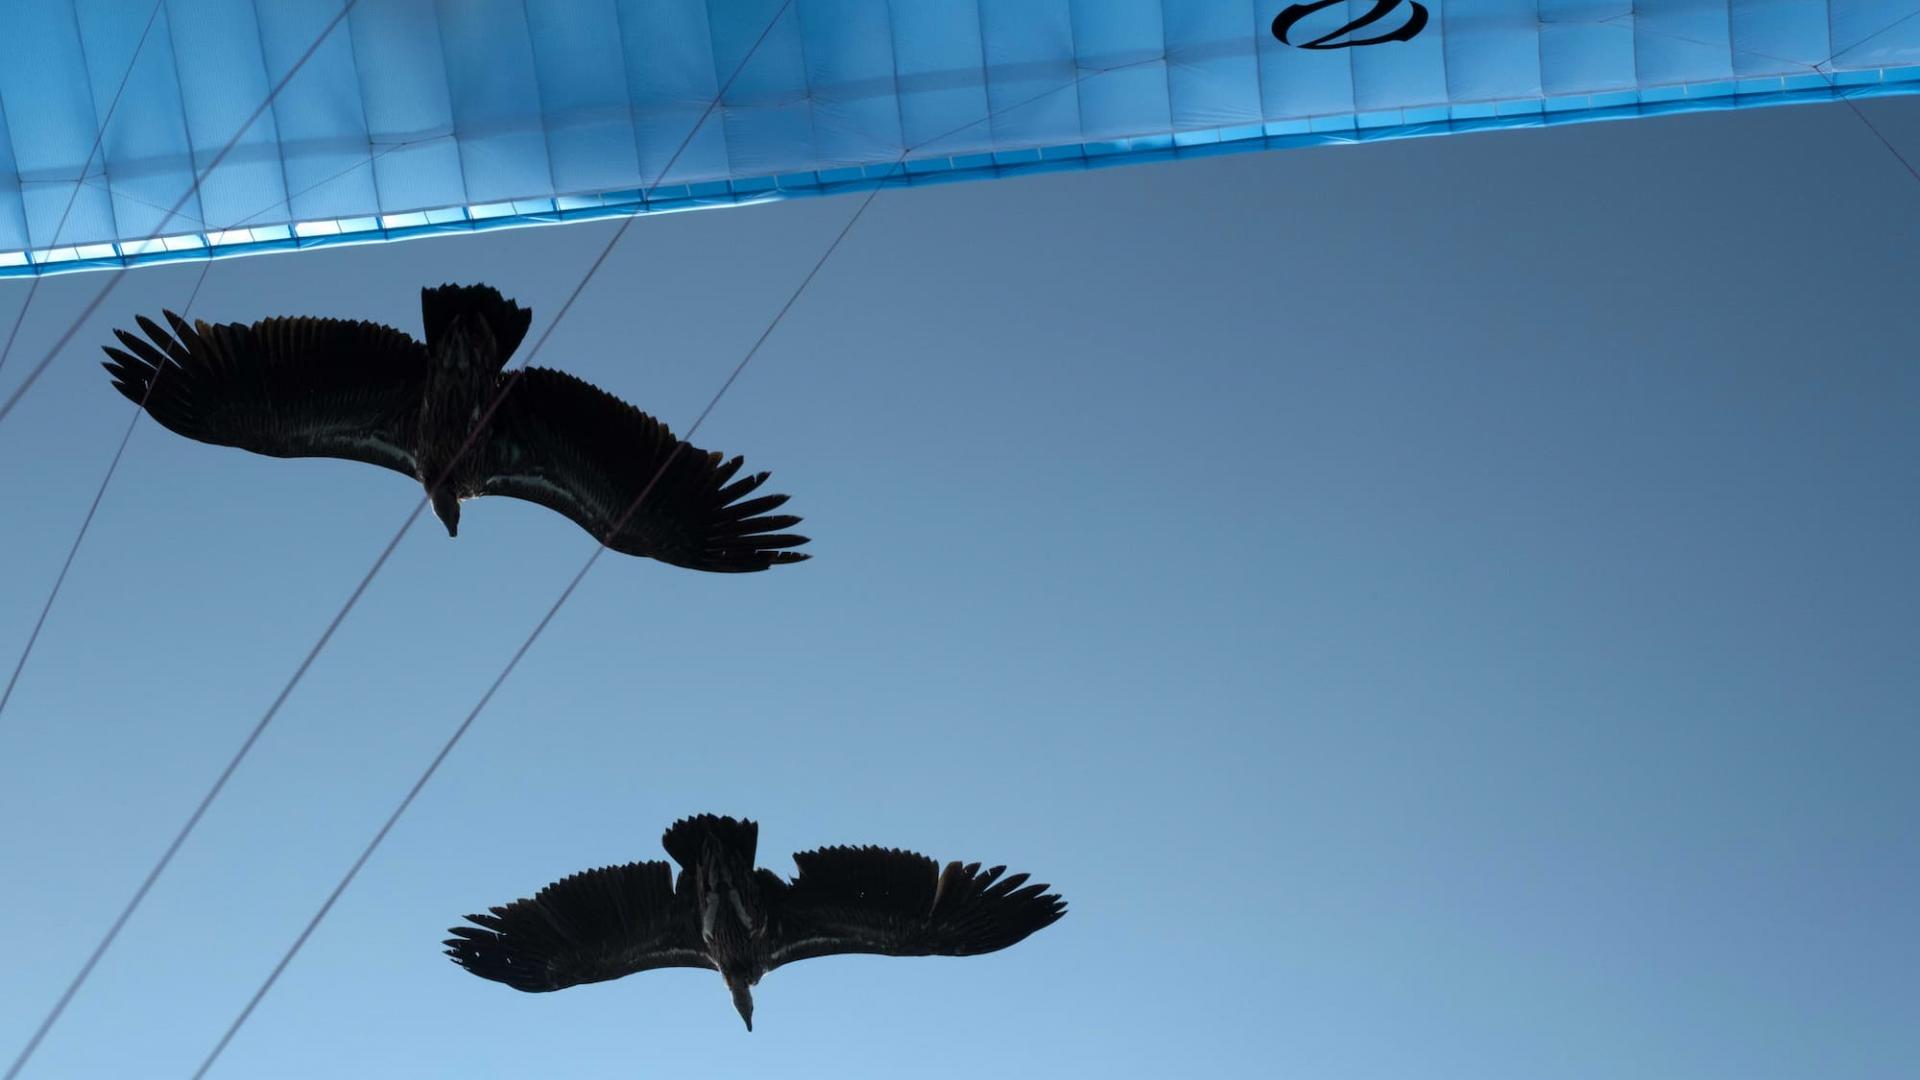 deux vautours de l'Himalaya volent au dessus du bord d'attaque d'un parapente